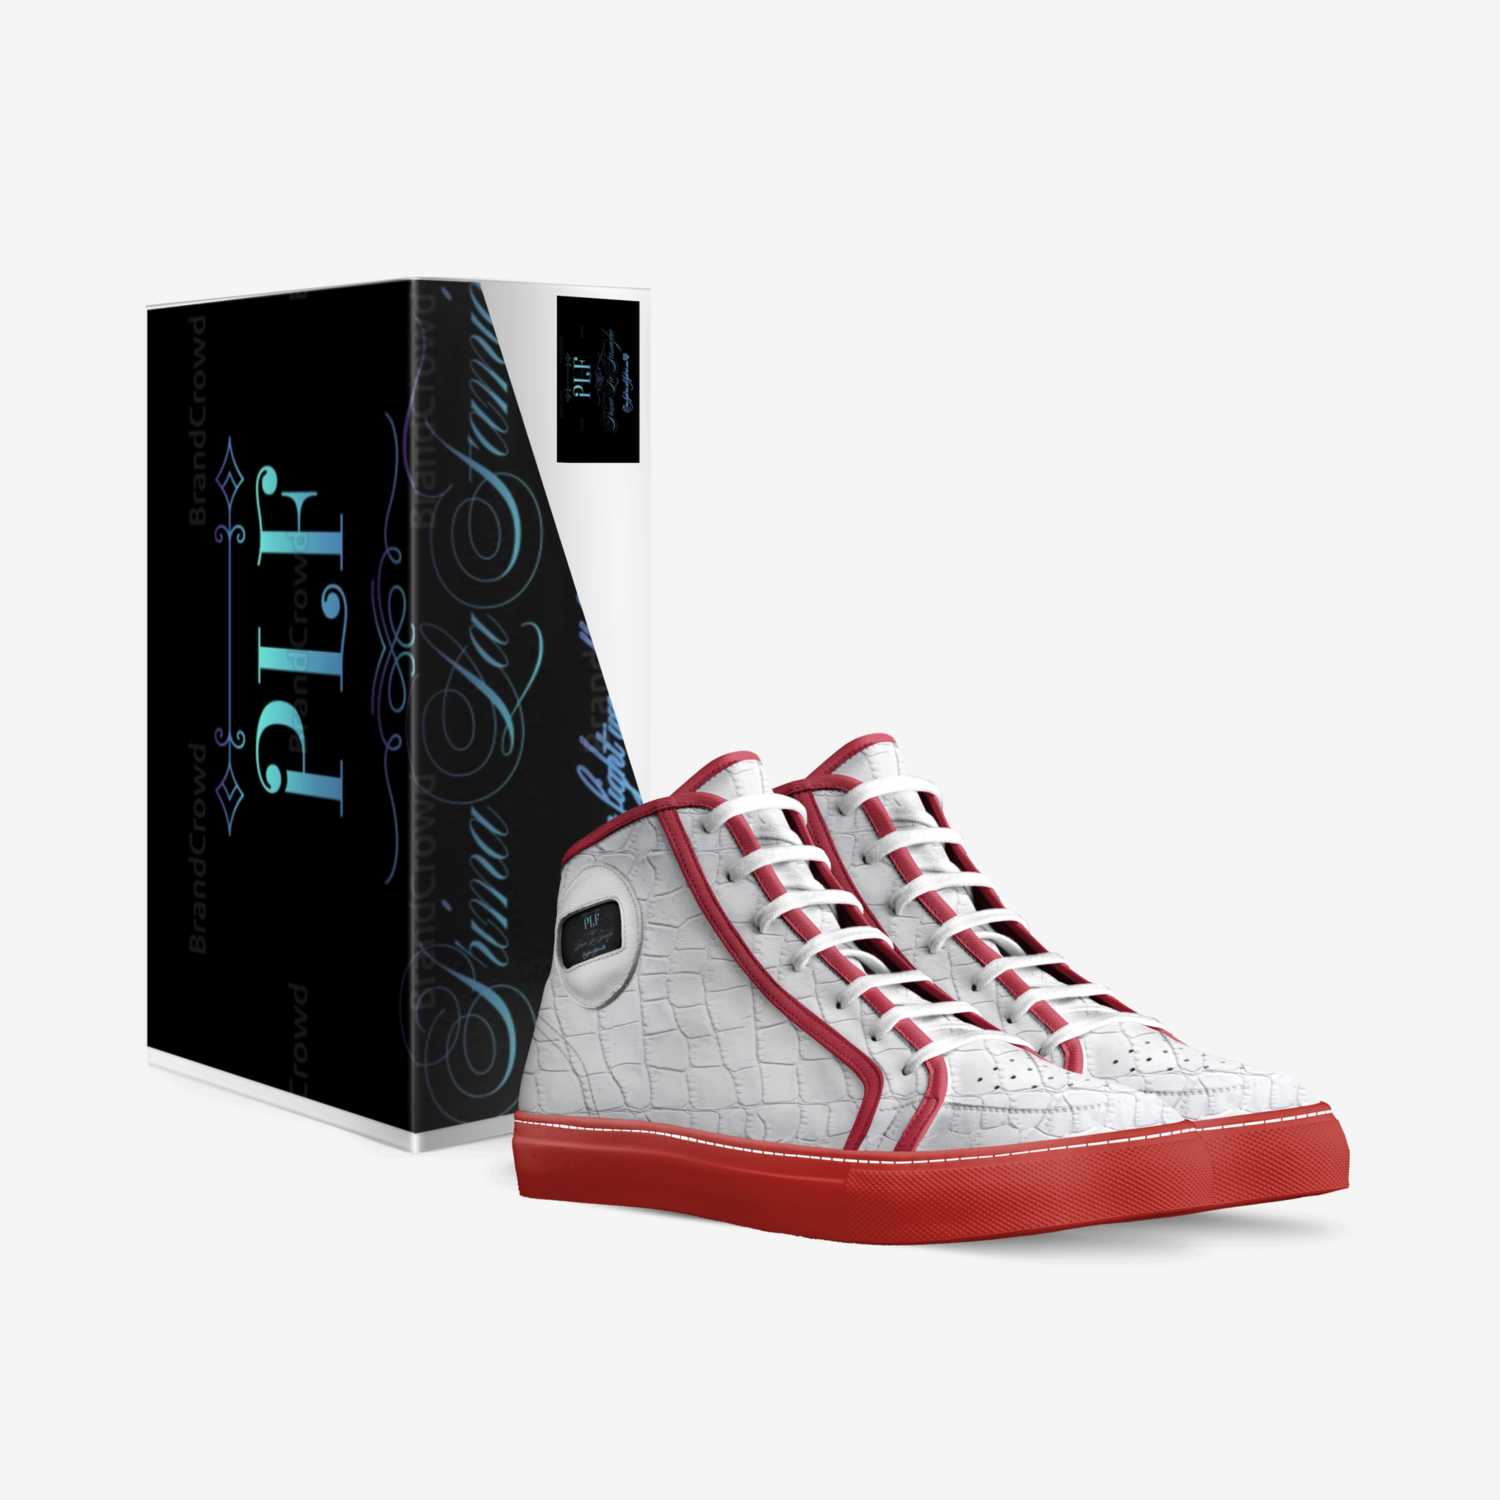 Prima La Famiglia custom made in Italy shoes by Pierre Mcclinton | Box view